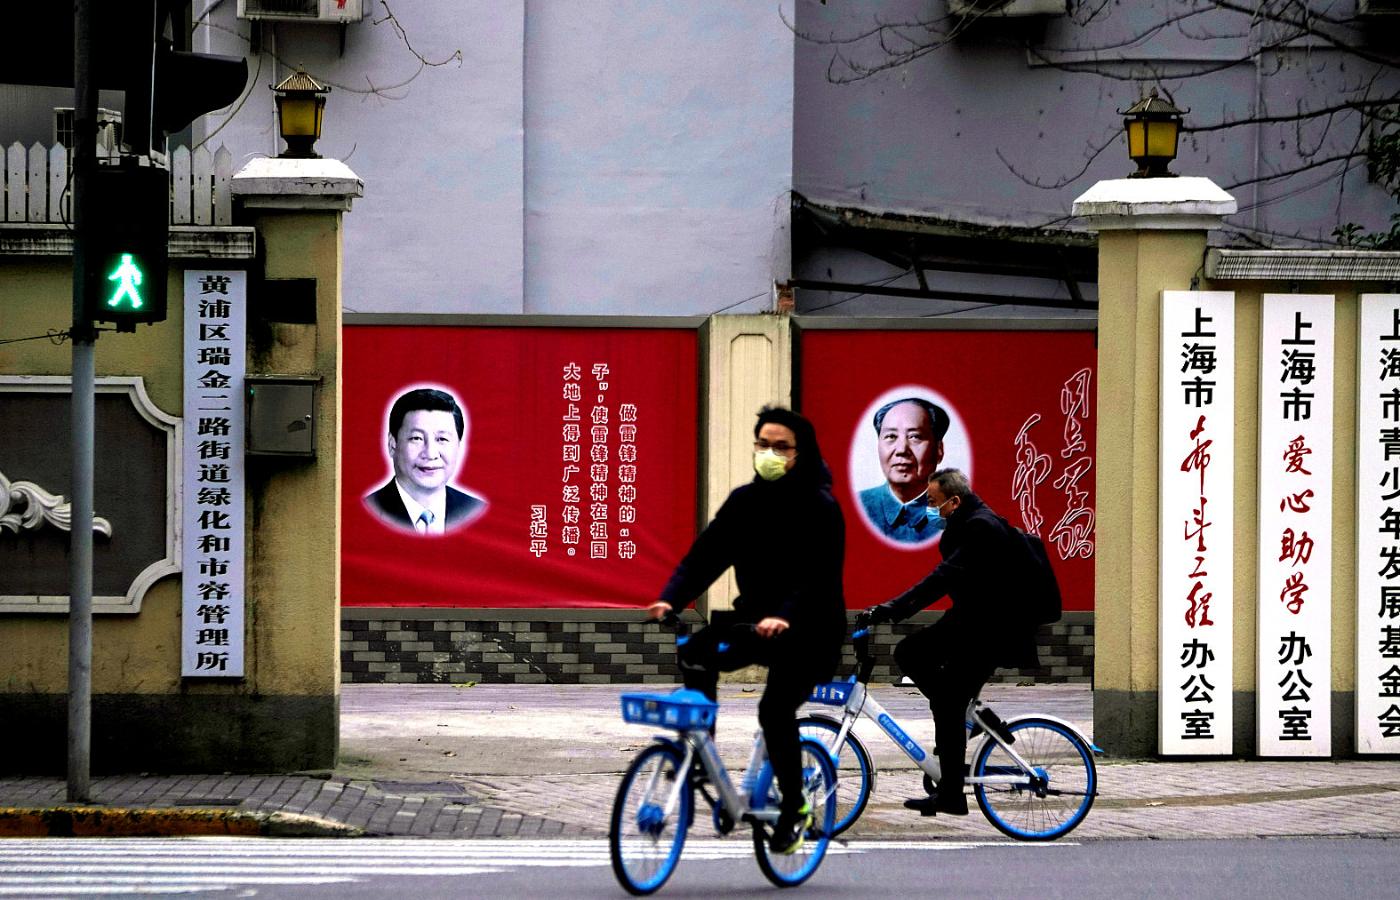 Xi Jinping i jego poplecznicy w krytyce Australii zachowywali dotąd nieco większy umiar.